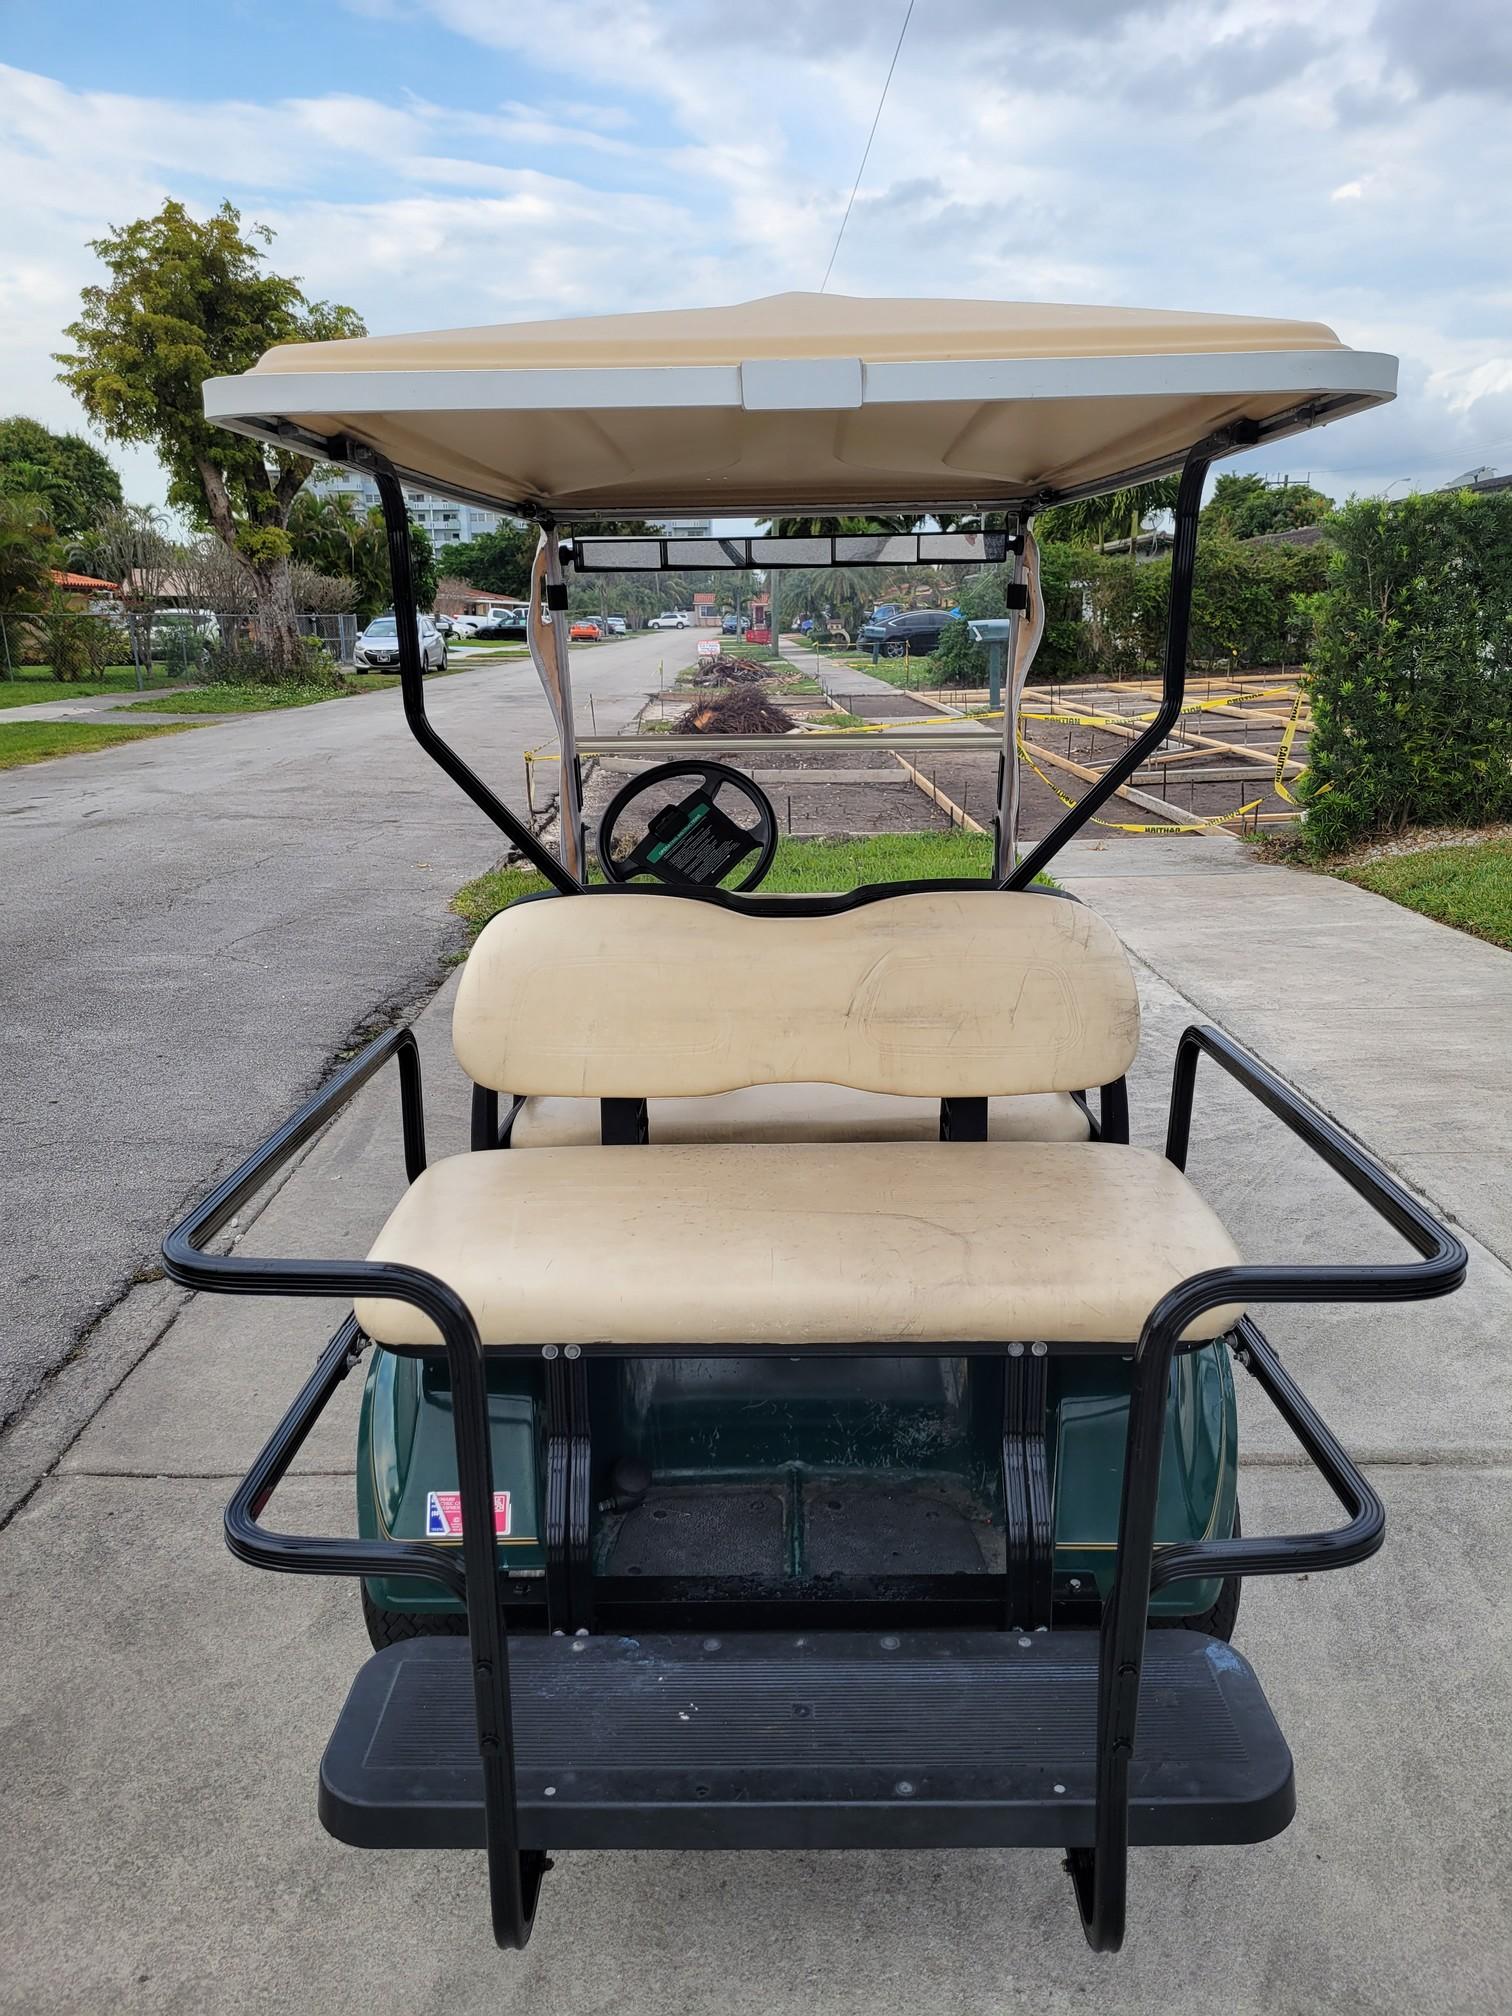 Electric CLUB CAR Golf Cart Runs Great Golf Caddy